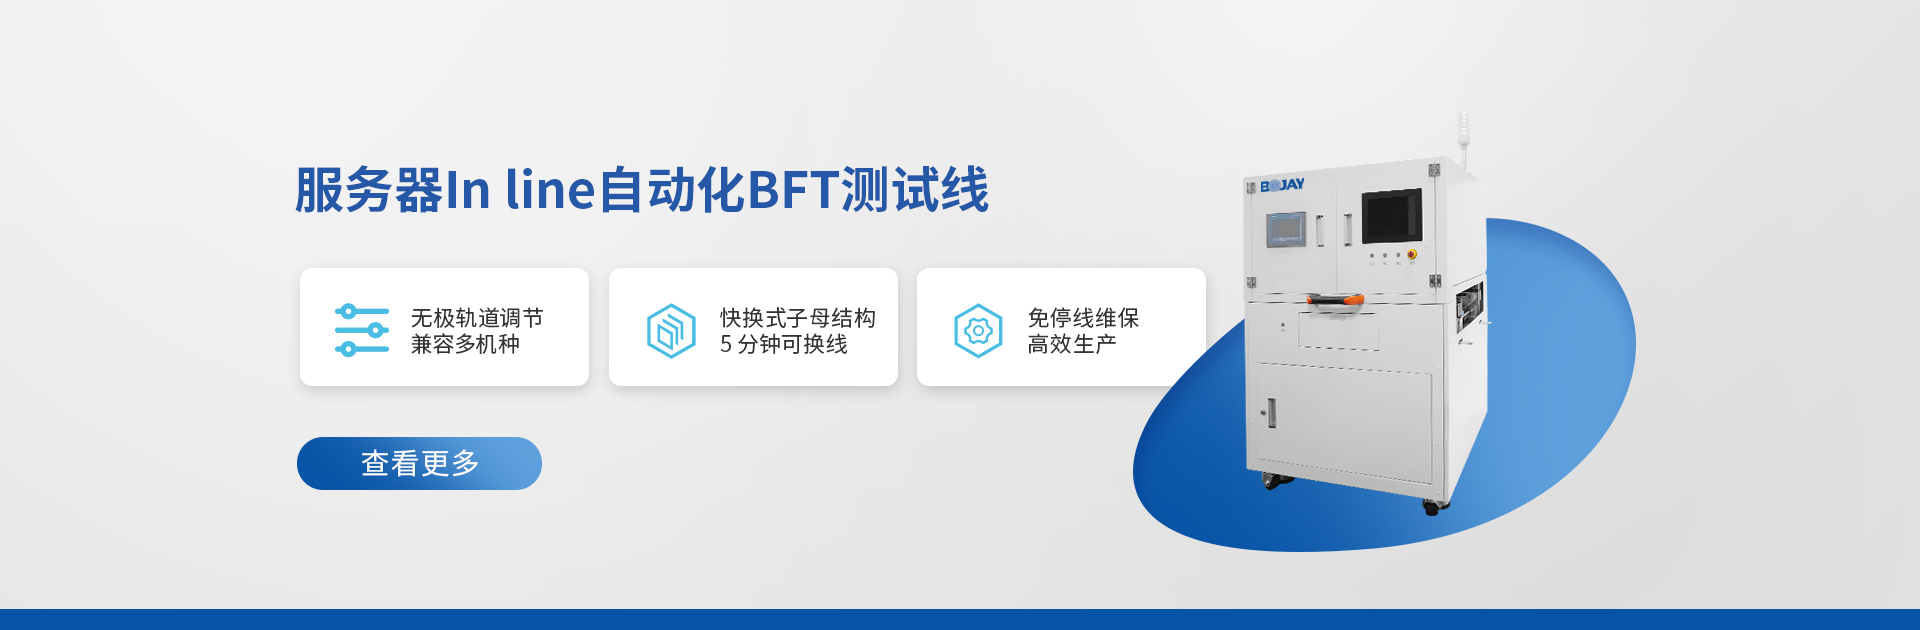 优盈平台官网登录在线BFT测试线